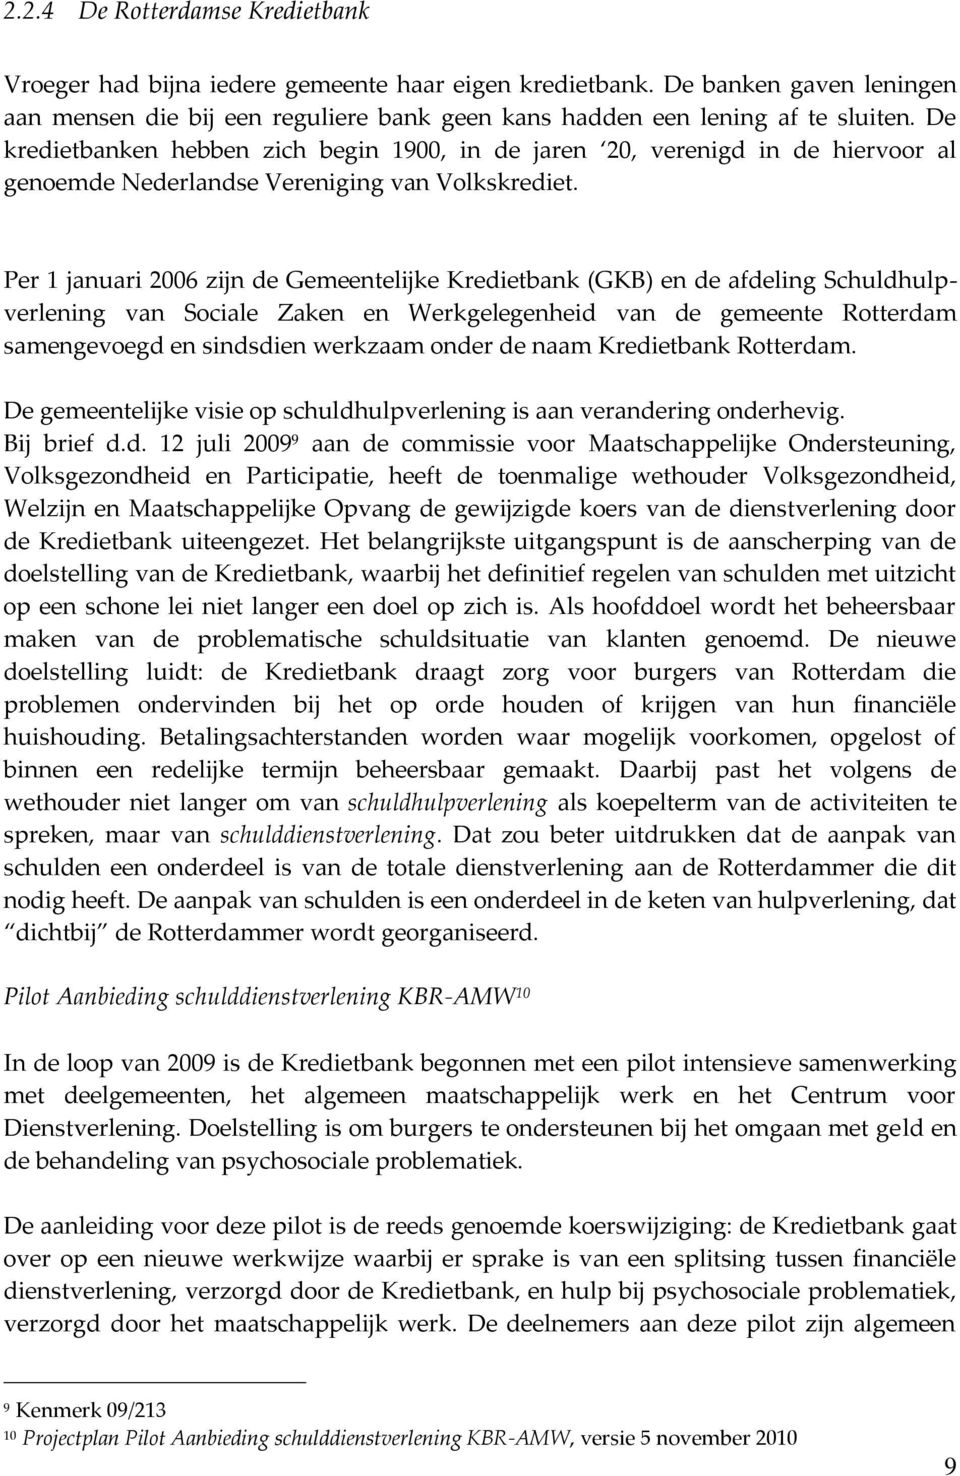 Per 1 januari 2006 zijn de Gemeentelijke Kredietbank (GKB) en de afdeling Schuldhulpverlening van Sociale Zaken en Werkgelegenheid van de gemeente Rotterdam samengevoegd en sindsdien werkzaam onder